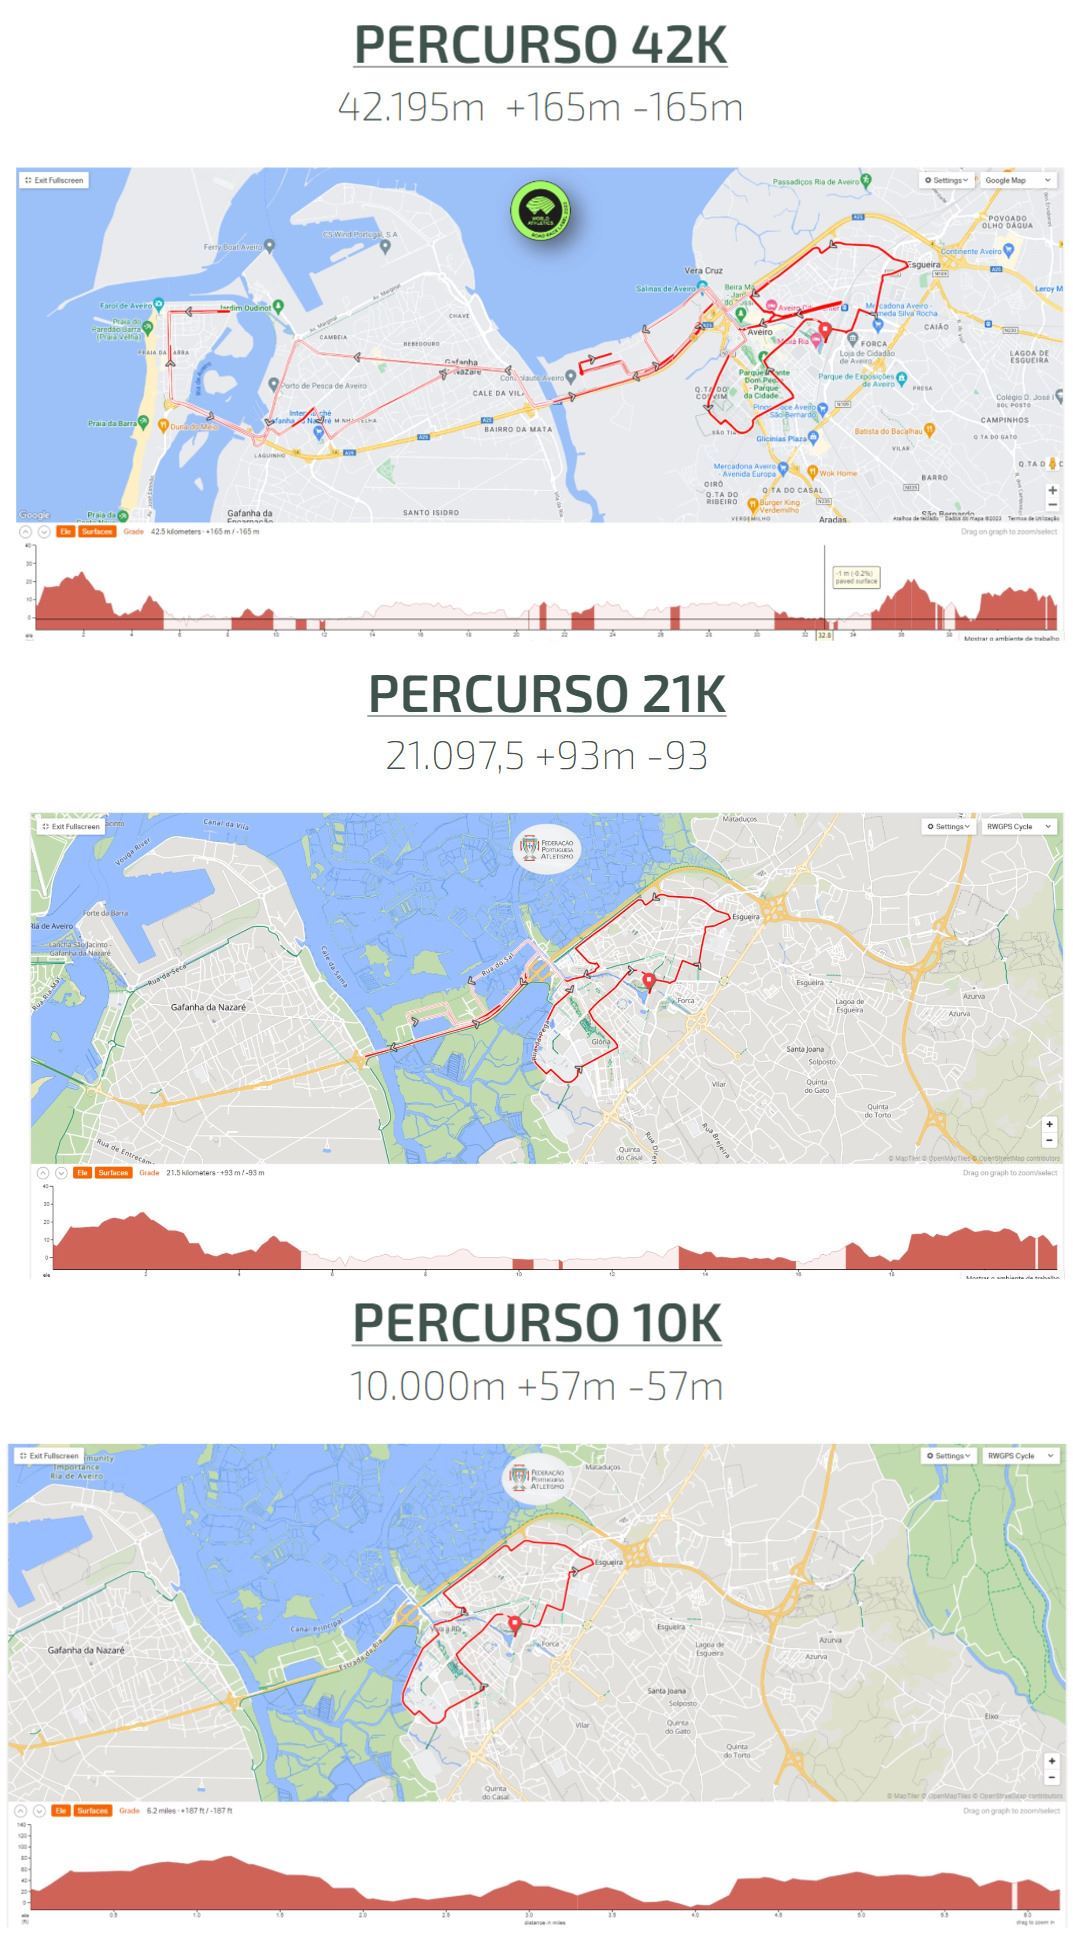 Maratona Da Europa - Aveiro Route Map